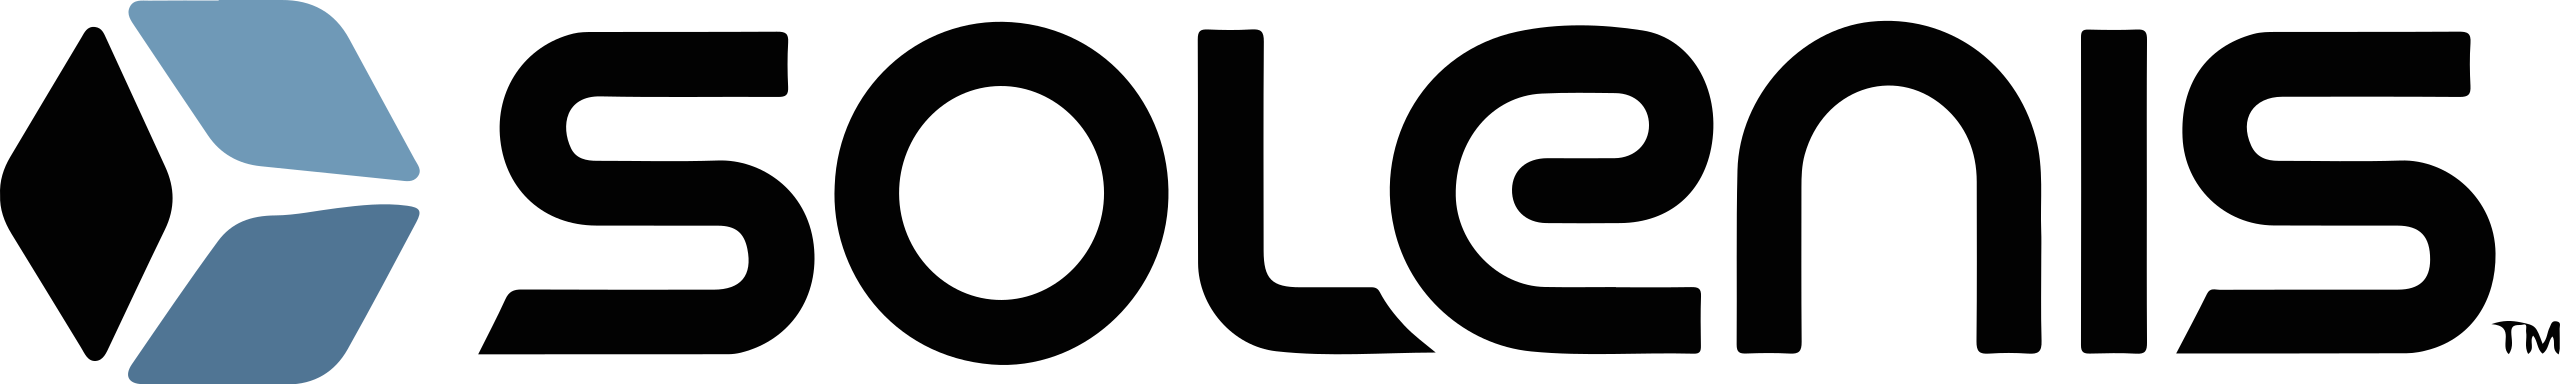 Solenis_logo